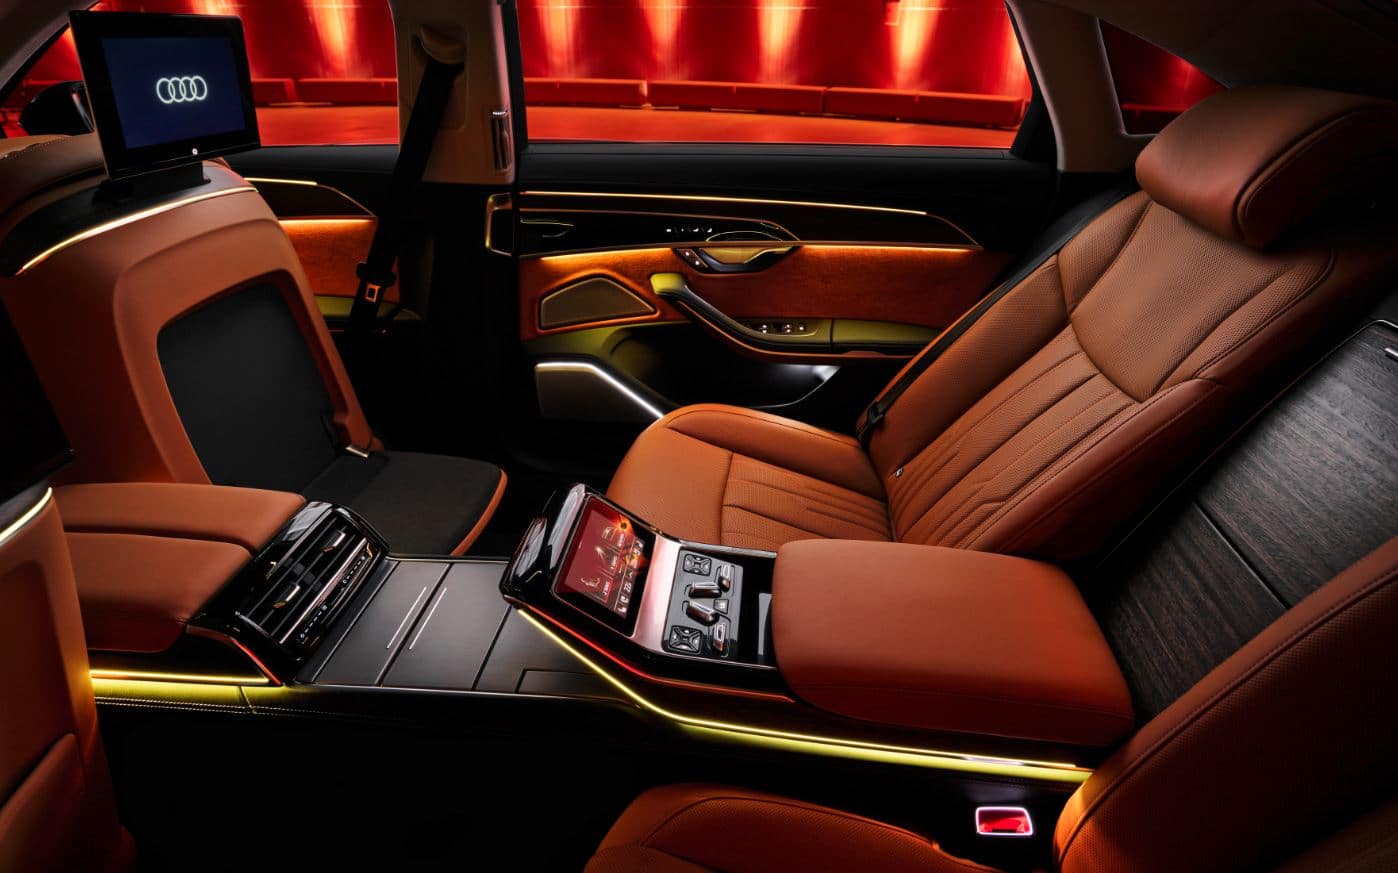 Audi A8 rear seats